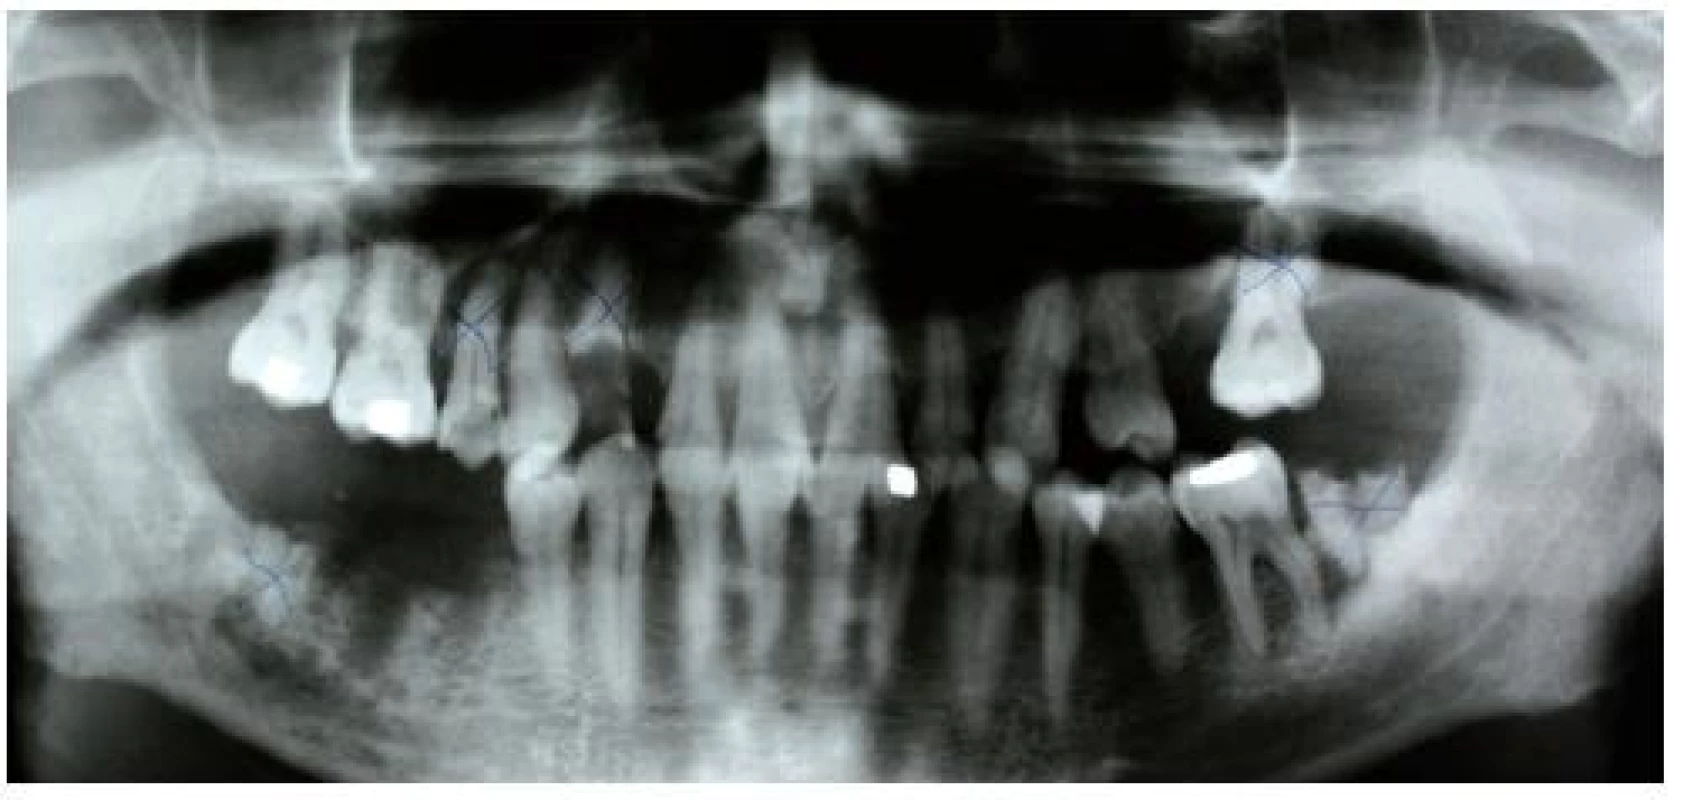 Ortopantomogram pacienta po extrakcích příčinných zubů (47, 46, 45) a označenými gangrenózními zuby určenými k extrakci